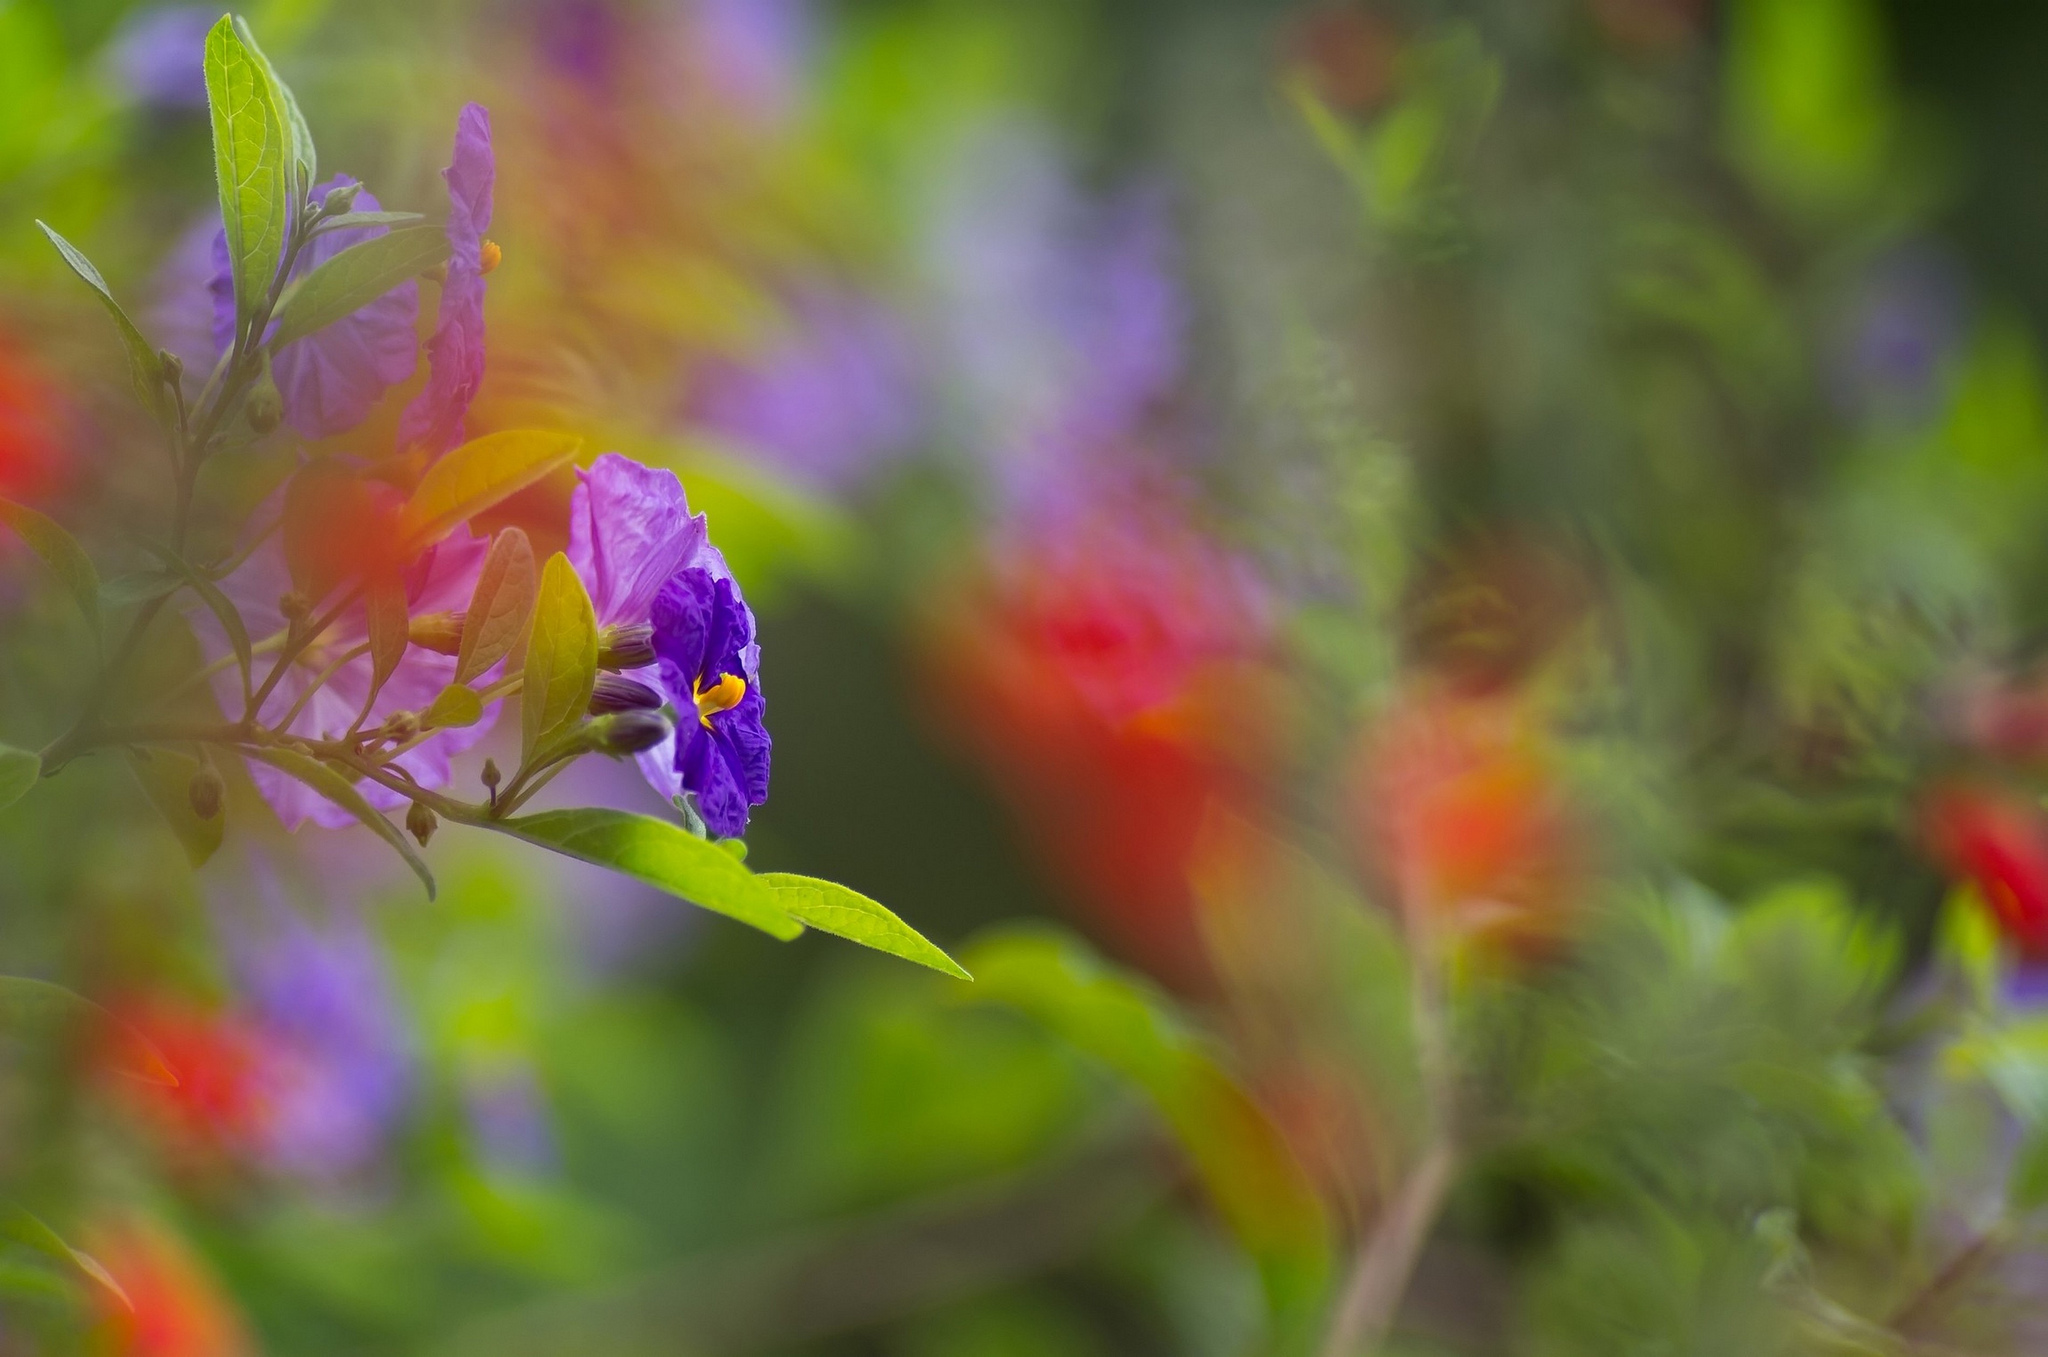 Descarga gratuita de fondo de pantalla para móvil de Naturaleza, Flores, Flor, Bokeh, Flor Purpura, Tierra/naturaleza, Difuminado.